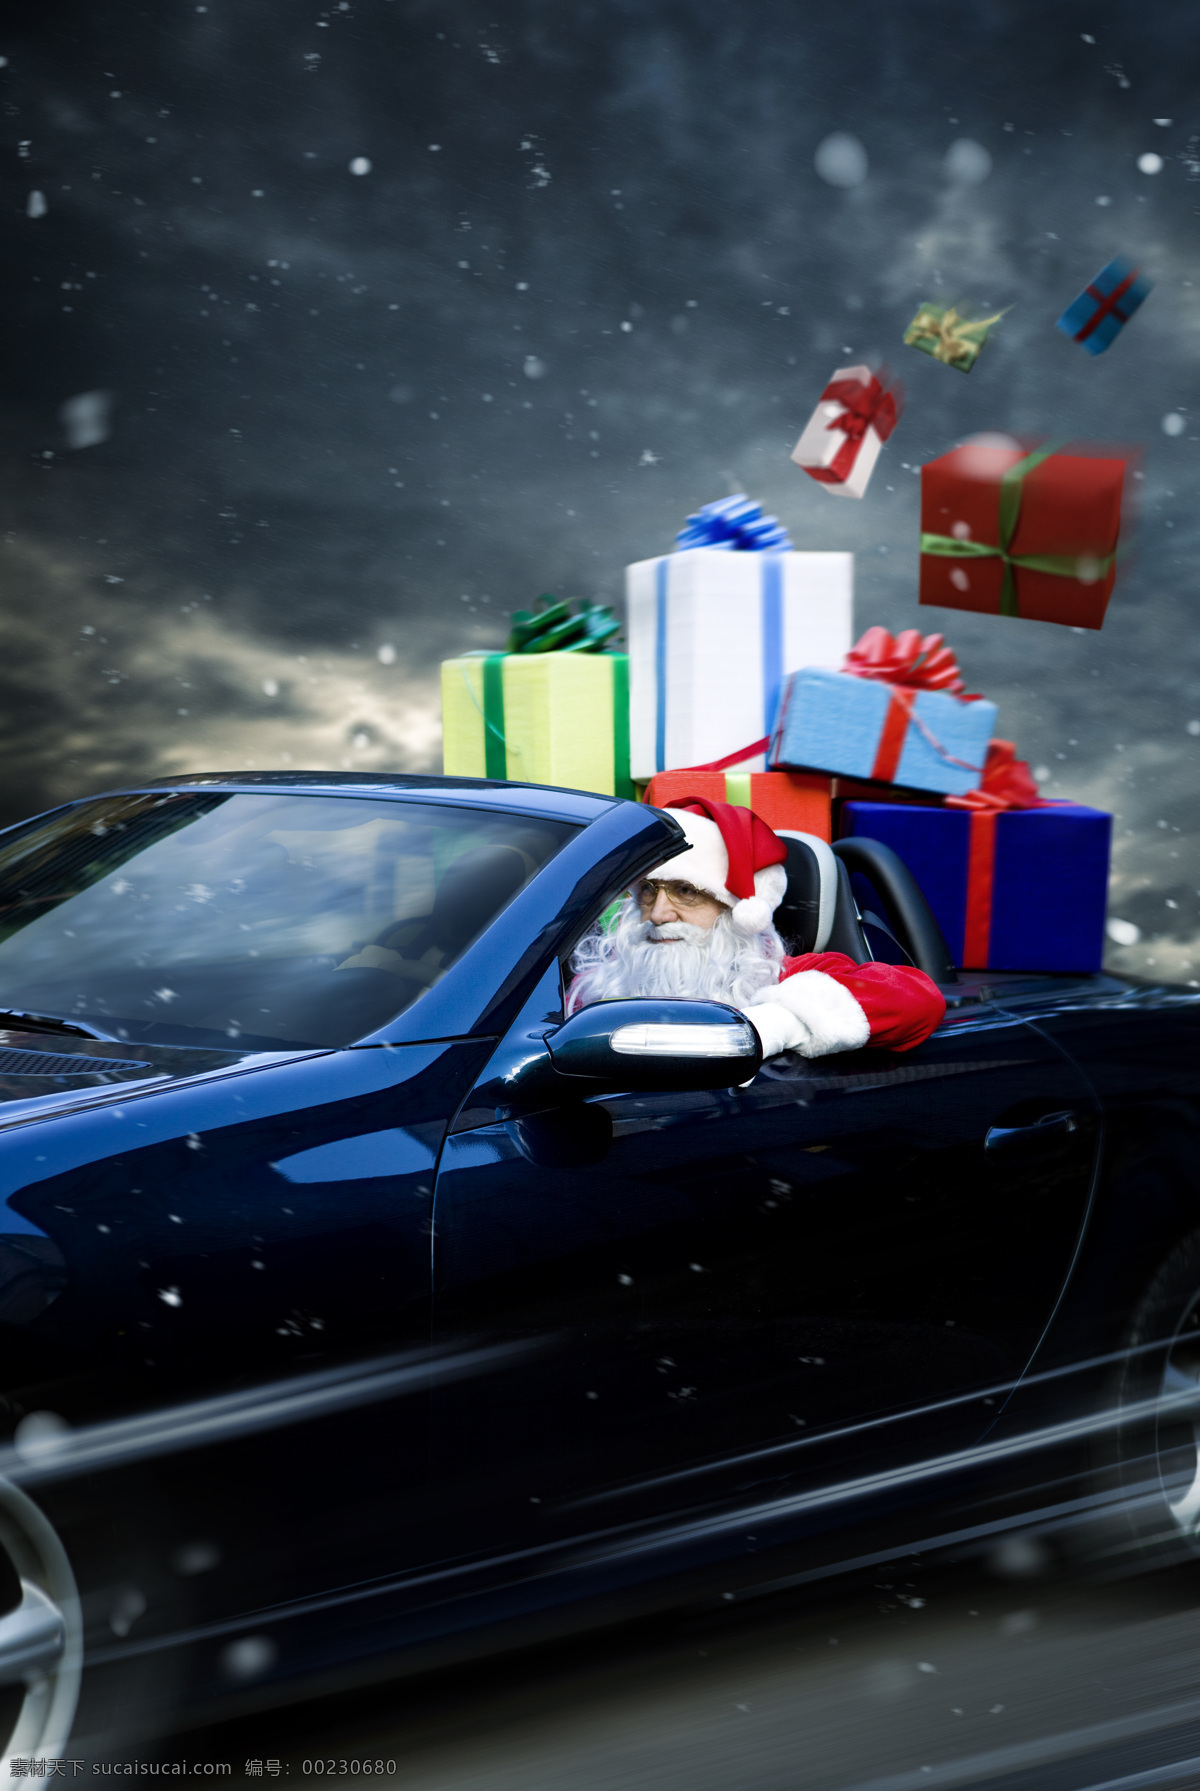 开跑 车 圣诞老人 圣诞节 节日素材 喜庆 开车 跑车 礼物 老人图片 人物图片